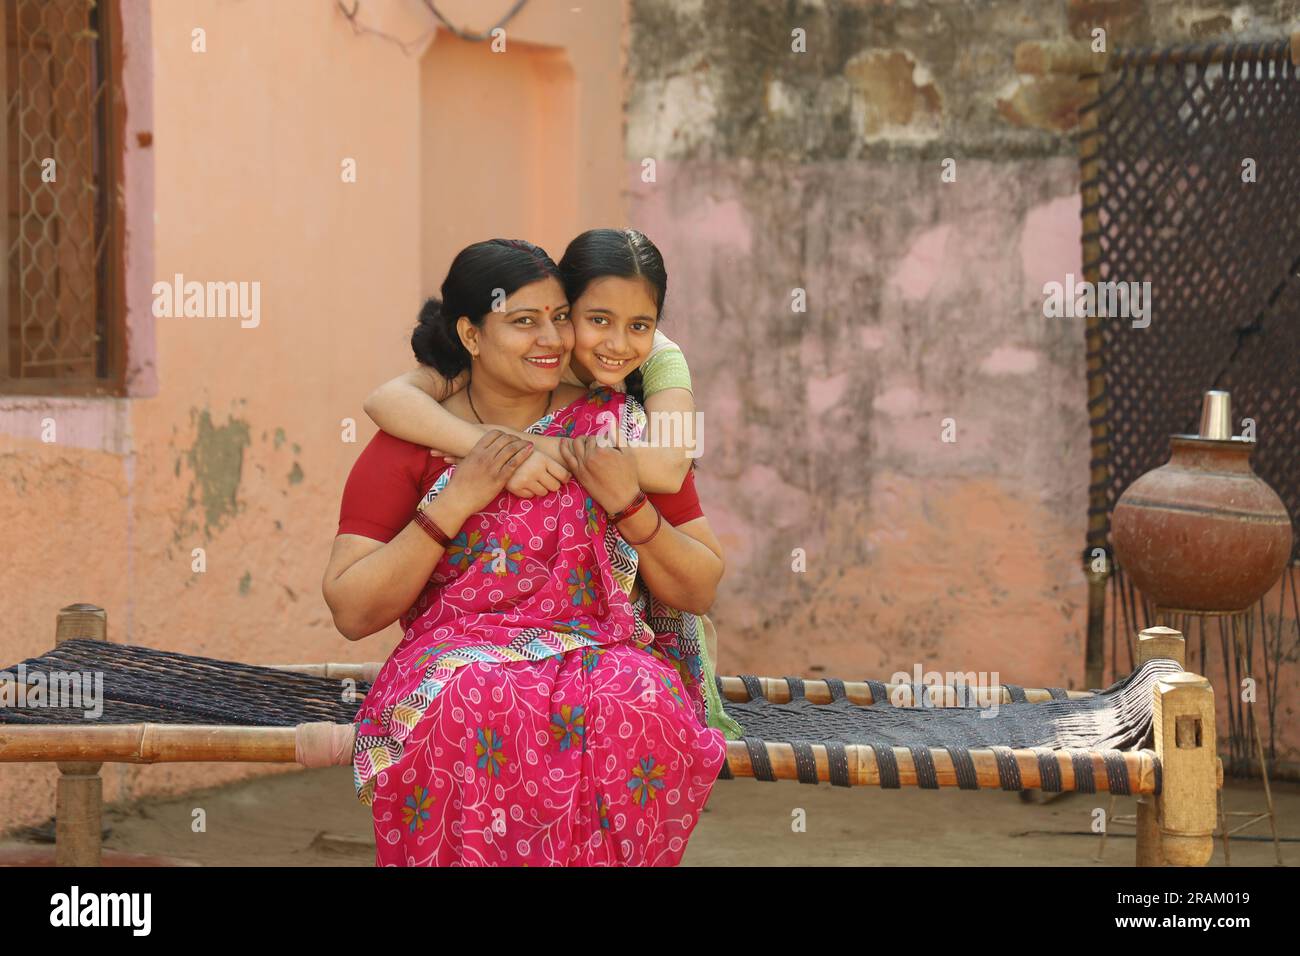 Ritratto della famiglia contadina indiana di una madre e di una figlia seduti insieme nell'abbigliamento di un abitante indiano nel villaggio. Foto Stock